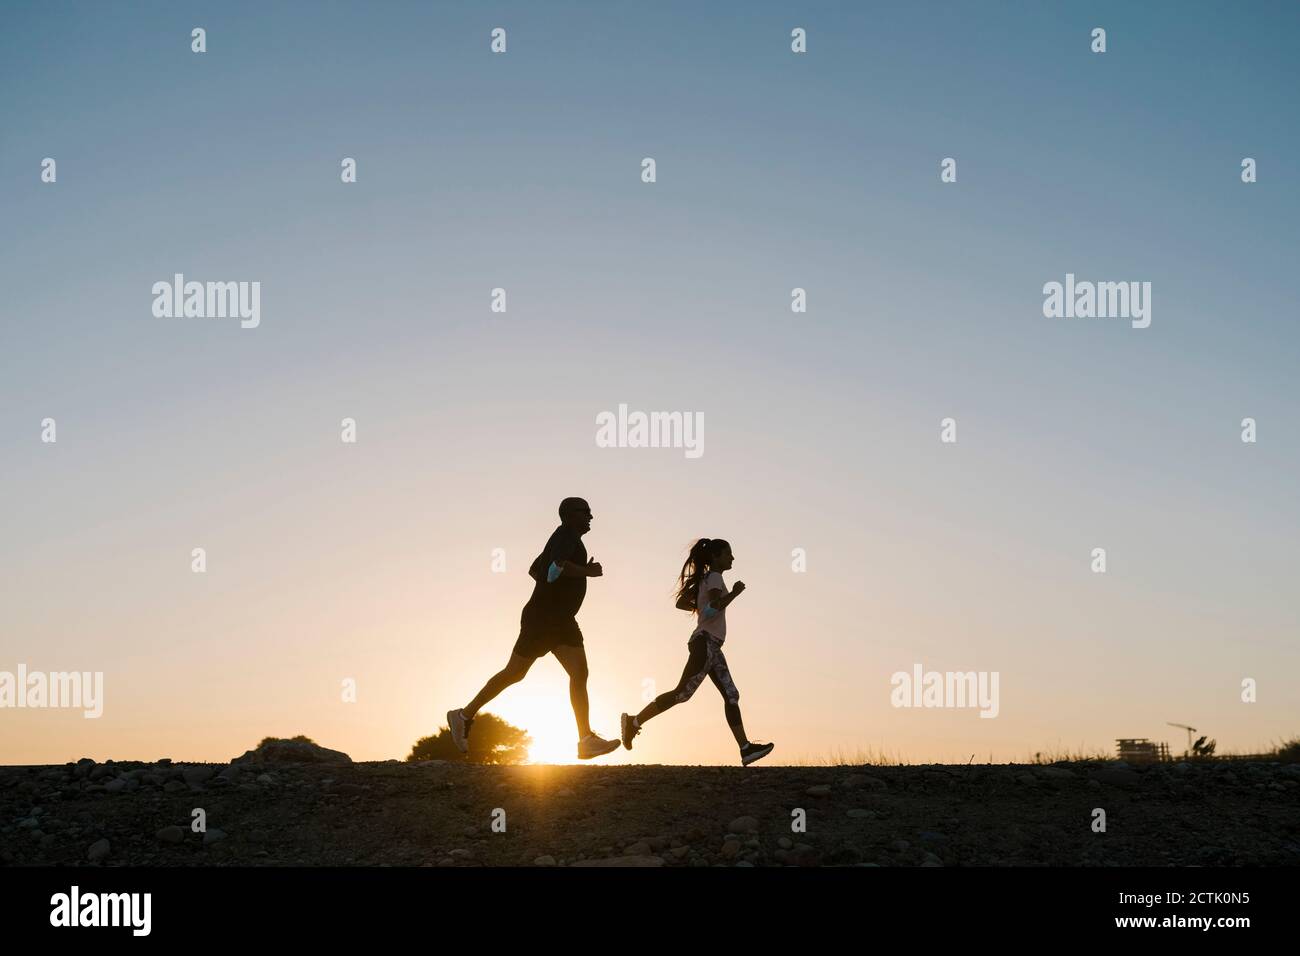 Silhouette de l'athlète et de la femme qui s'élancé contre un ciel dégagé pendant coucher de soleil Banque D'Images